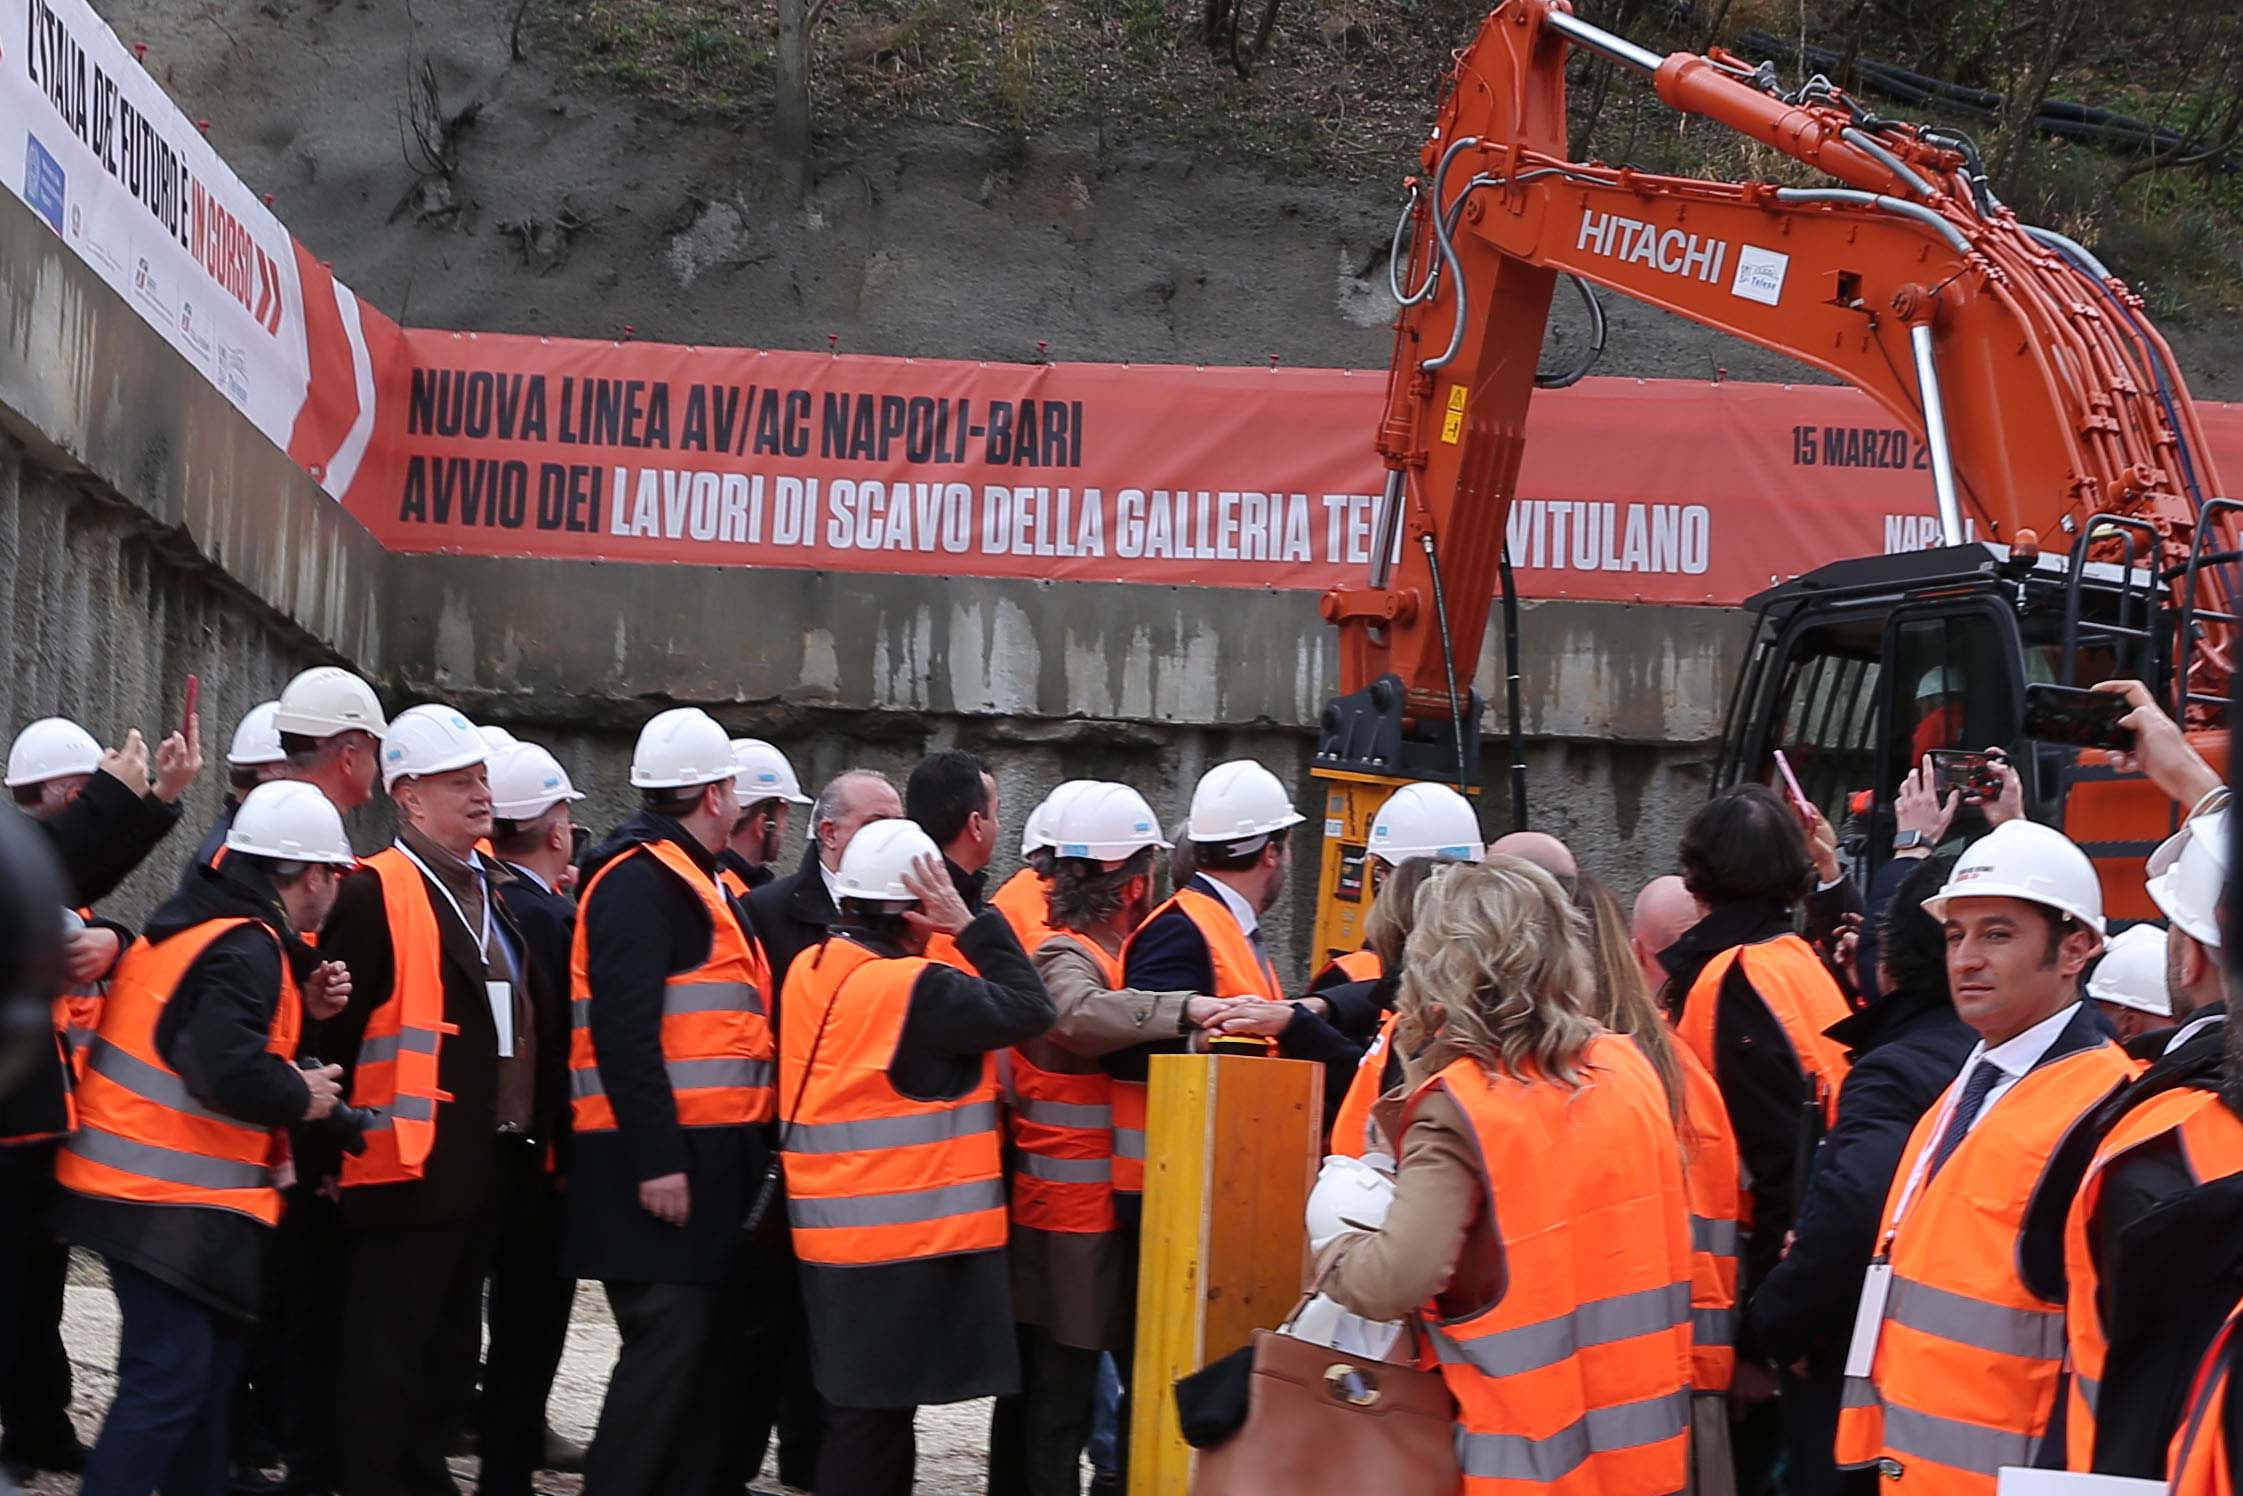 Nuova linea alta velocità Napoli-Bari: inaugurato lo scavo delle gallerie sulla tratta Telese-Vitulano